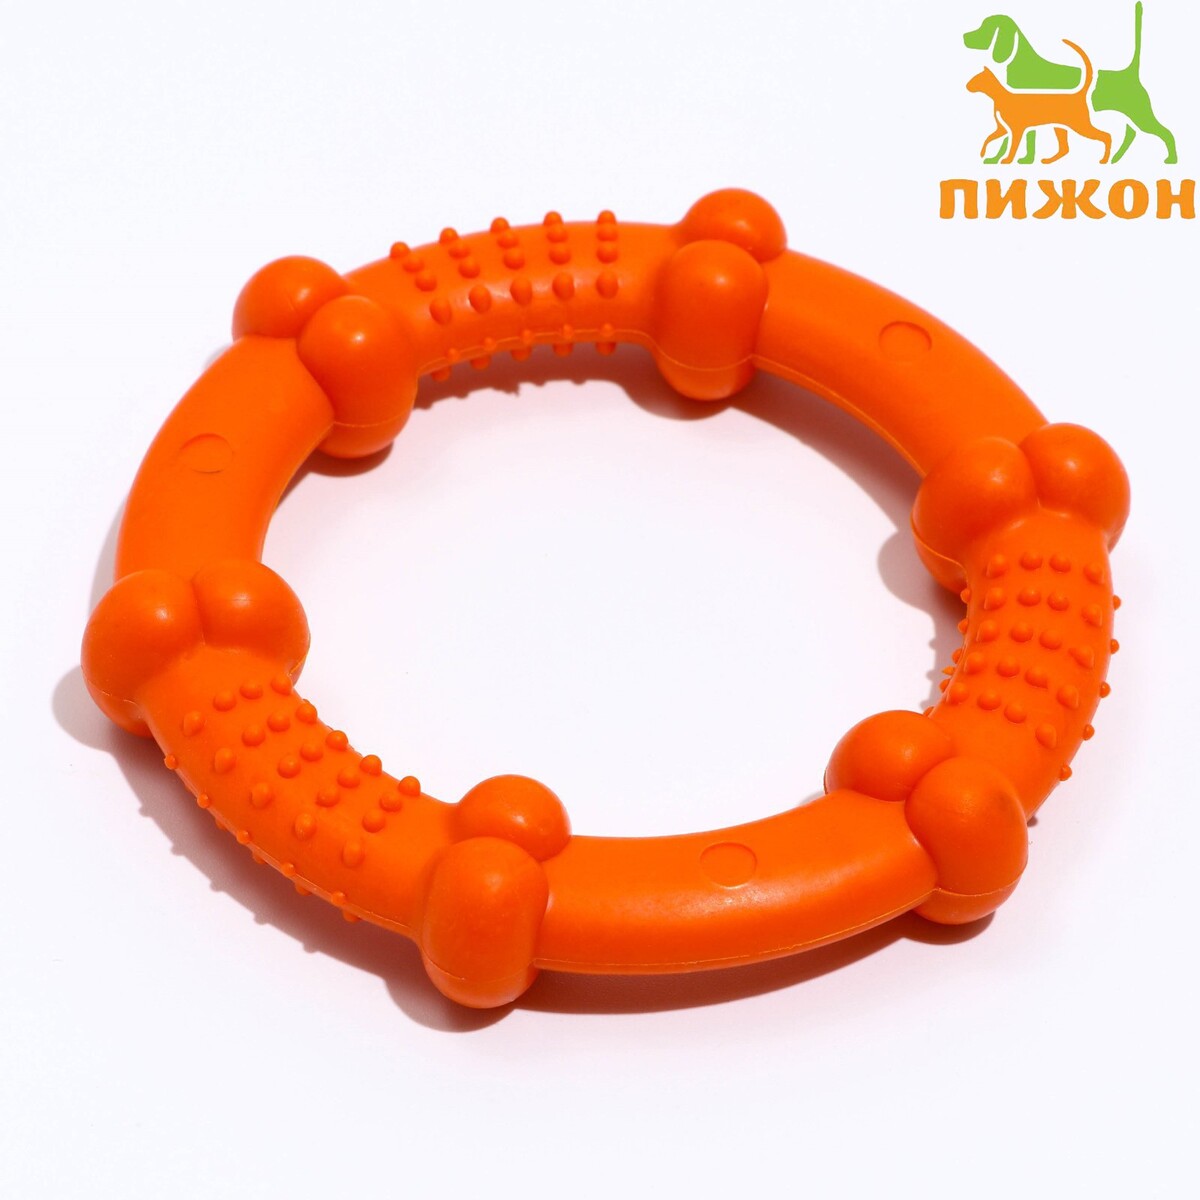 Кольцо рельефное из термопластичной резины, не тонет, 9,5 см, оранжевое оранжевое горлышко сказки